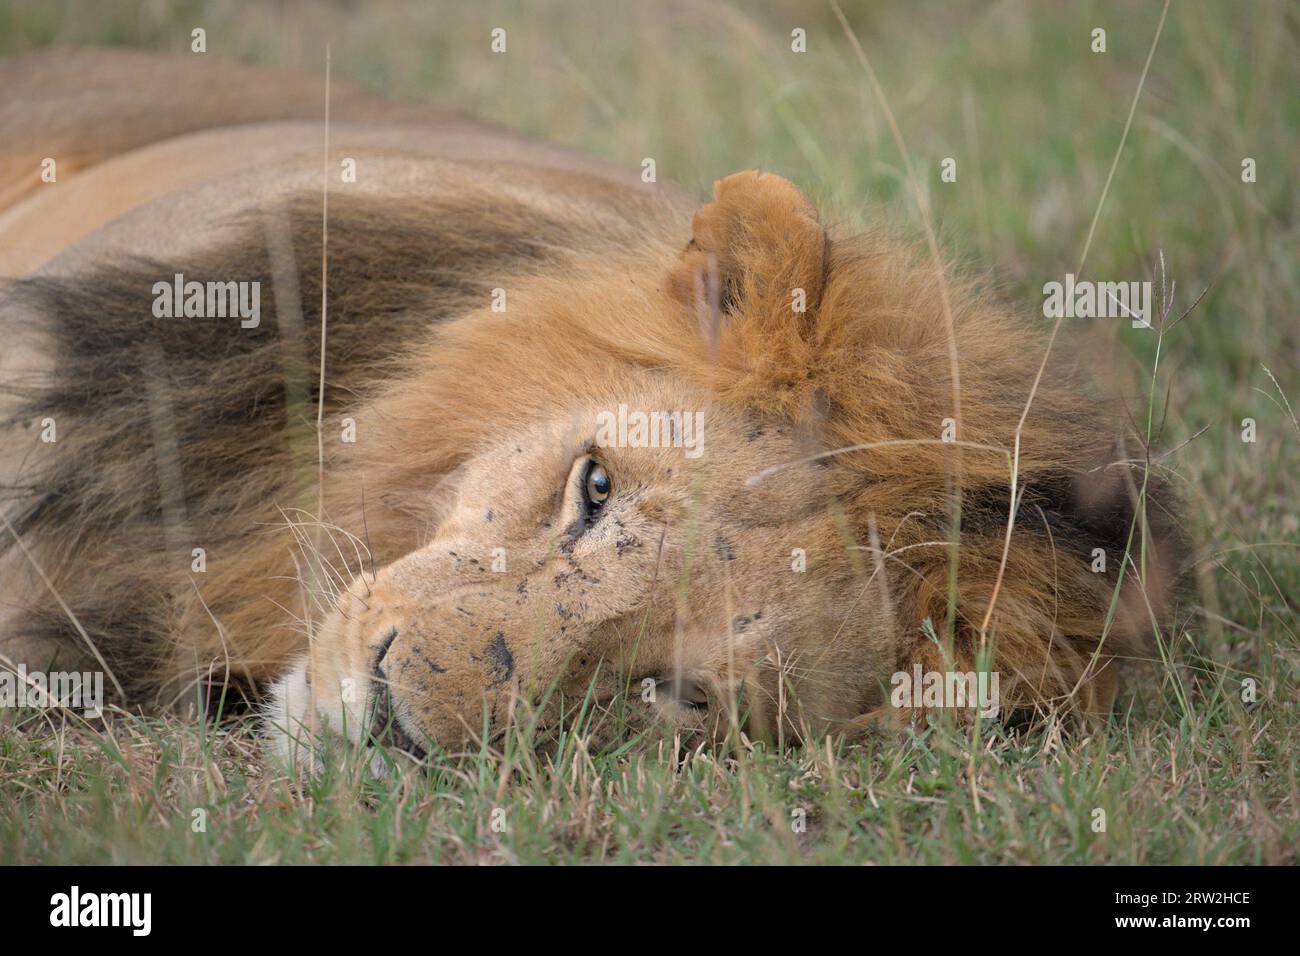 Erwachsener männlicher Löwe liegt auf dem Boden und schaut entspannt in die Kamera, Kopf nach unten, Augen offen, Maasai Mara, Kenia, Afrika Stockfoto